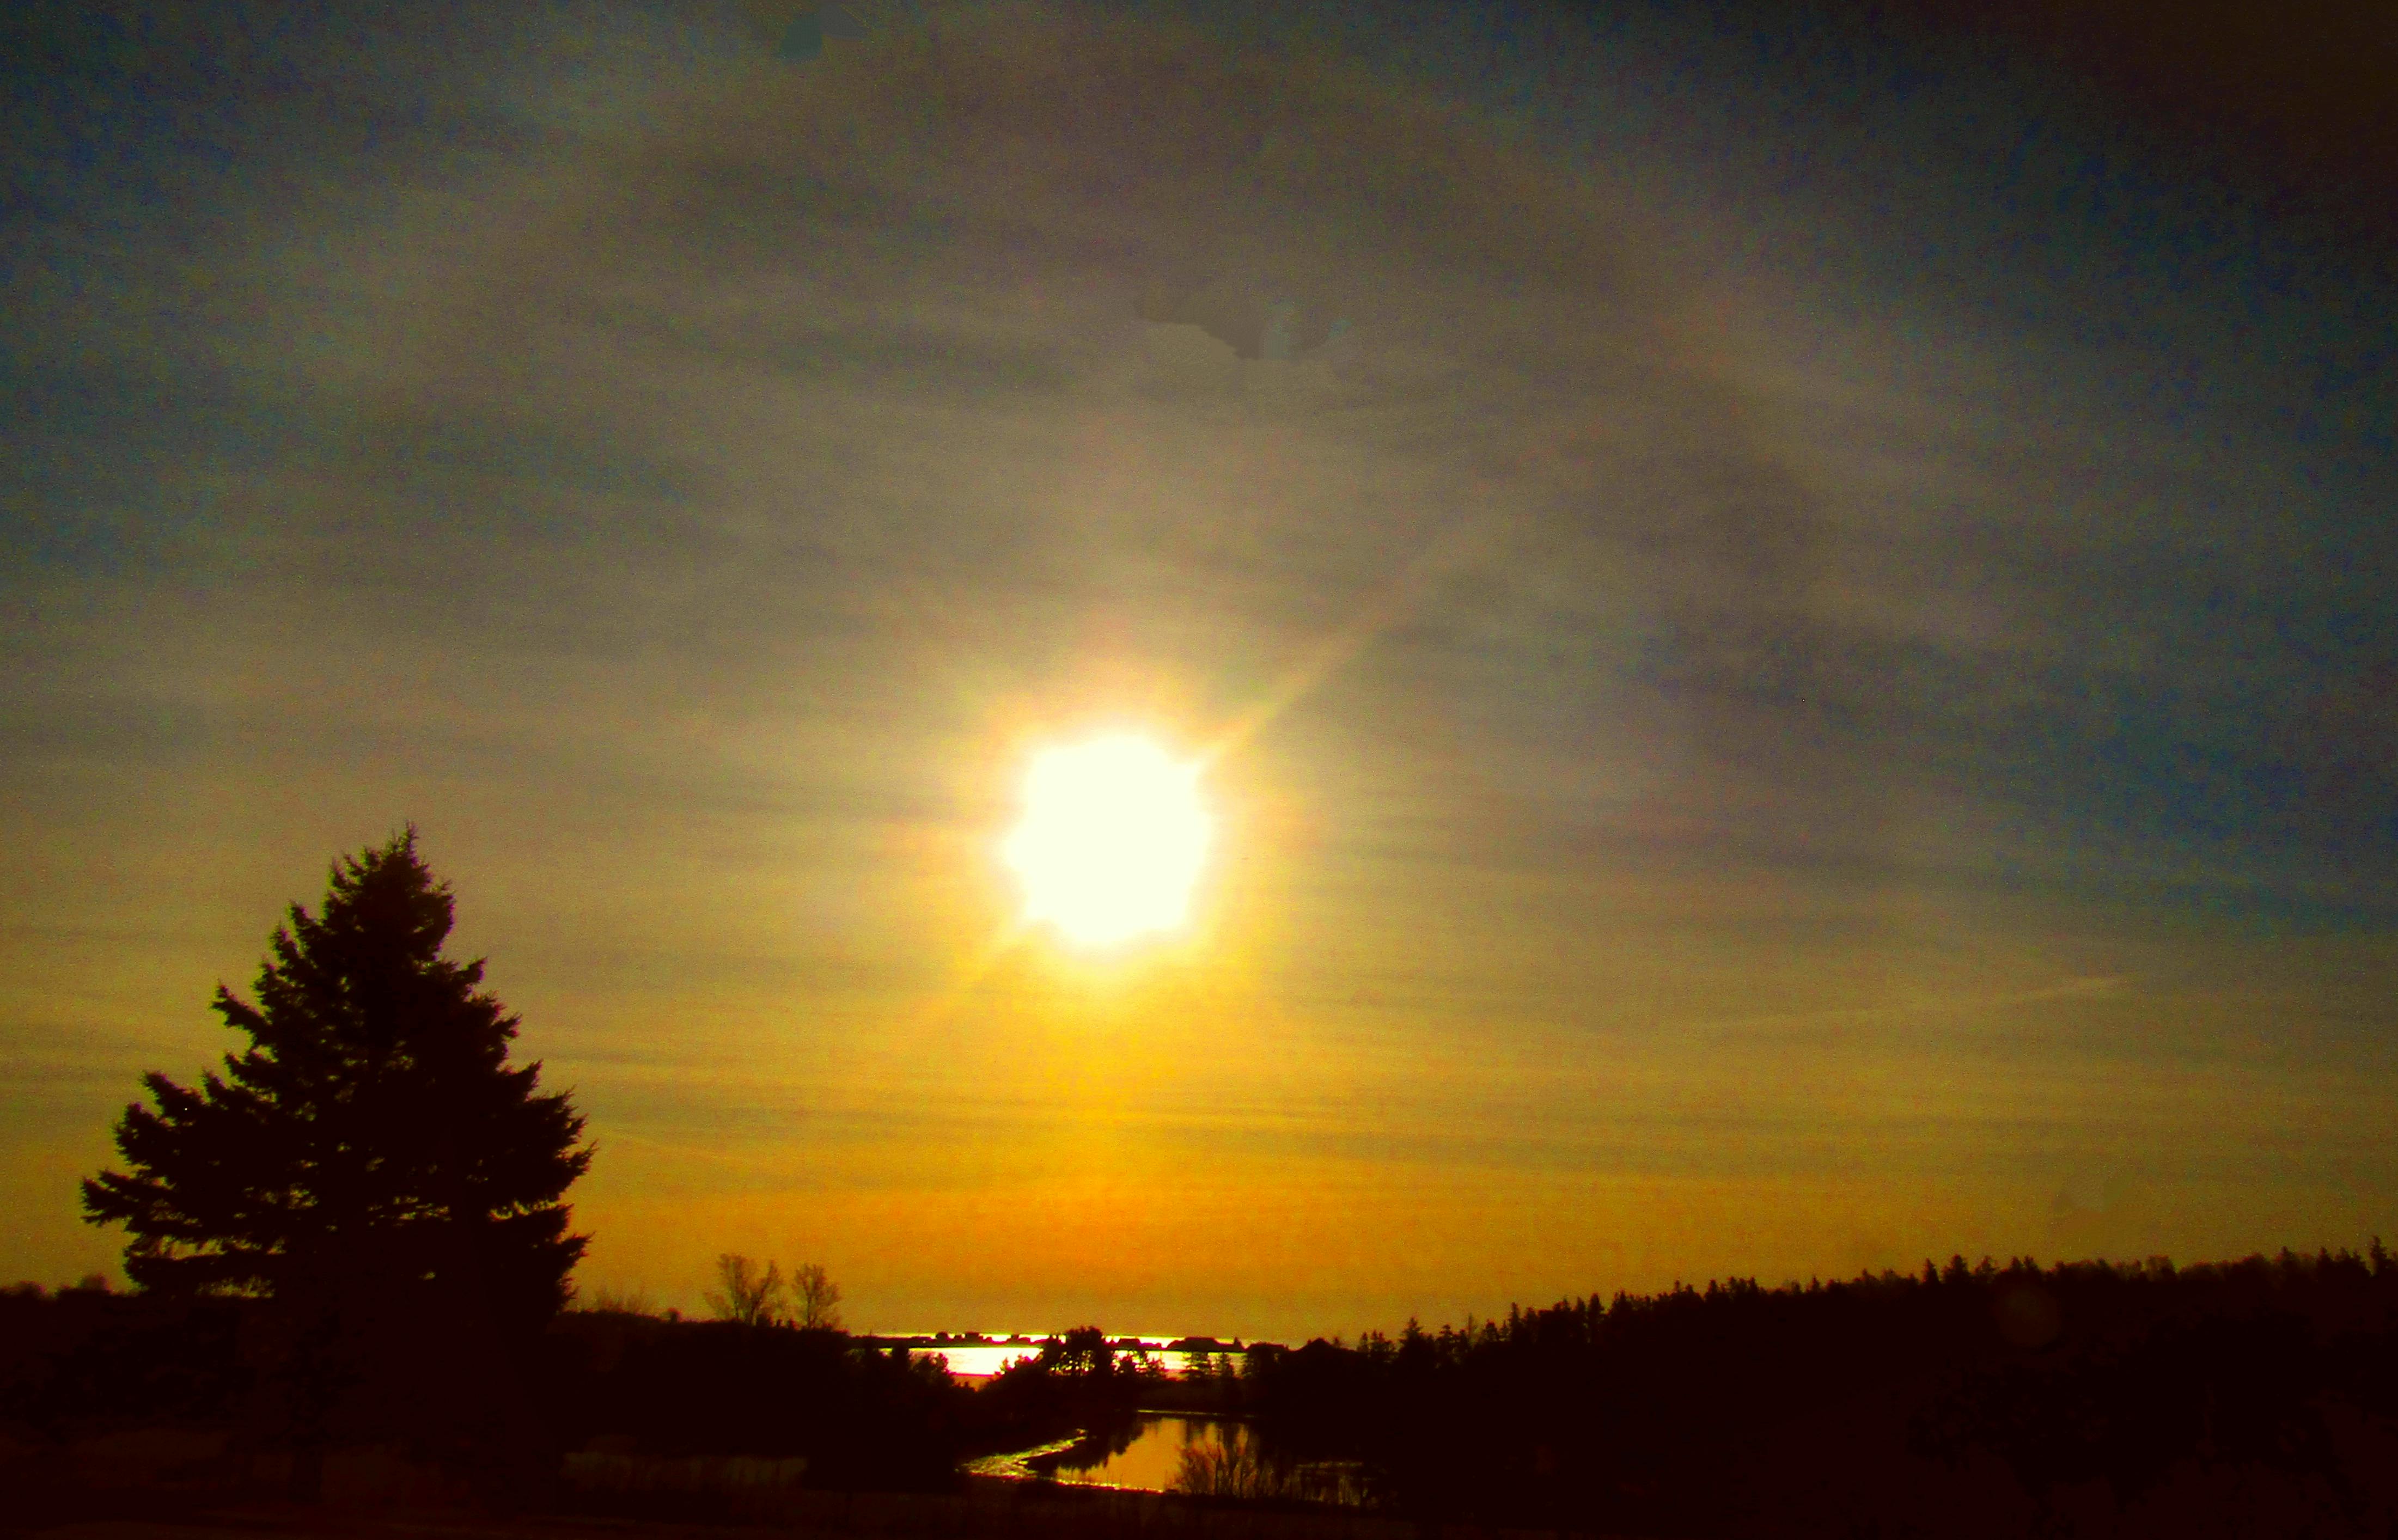 Tim Gallant caught a halo around the sun on setting day in North Rustico, P.E.I. -CONTRIBUTED